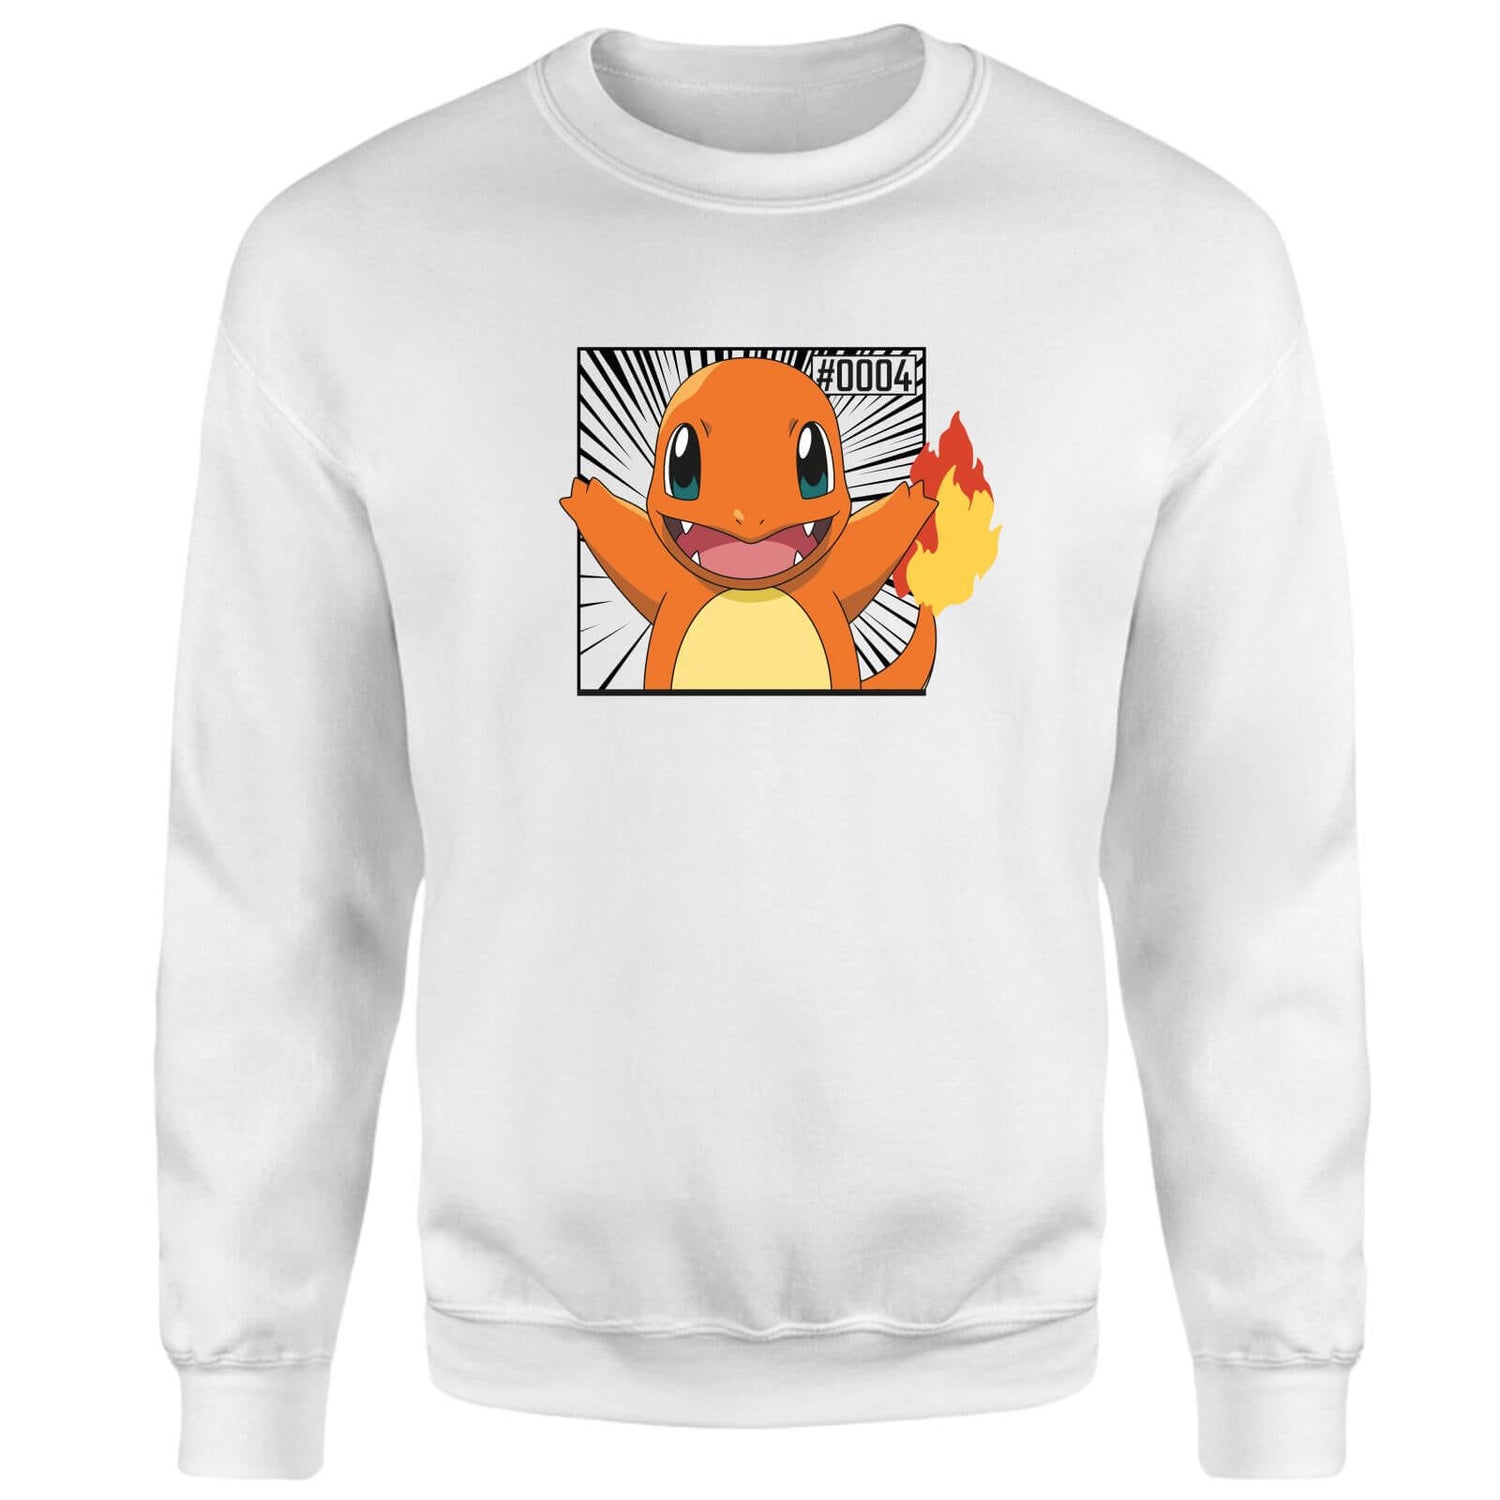 Pokémon Pokédex Charmander #0004 Sweatshirt - White